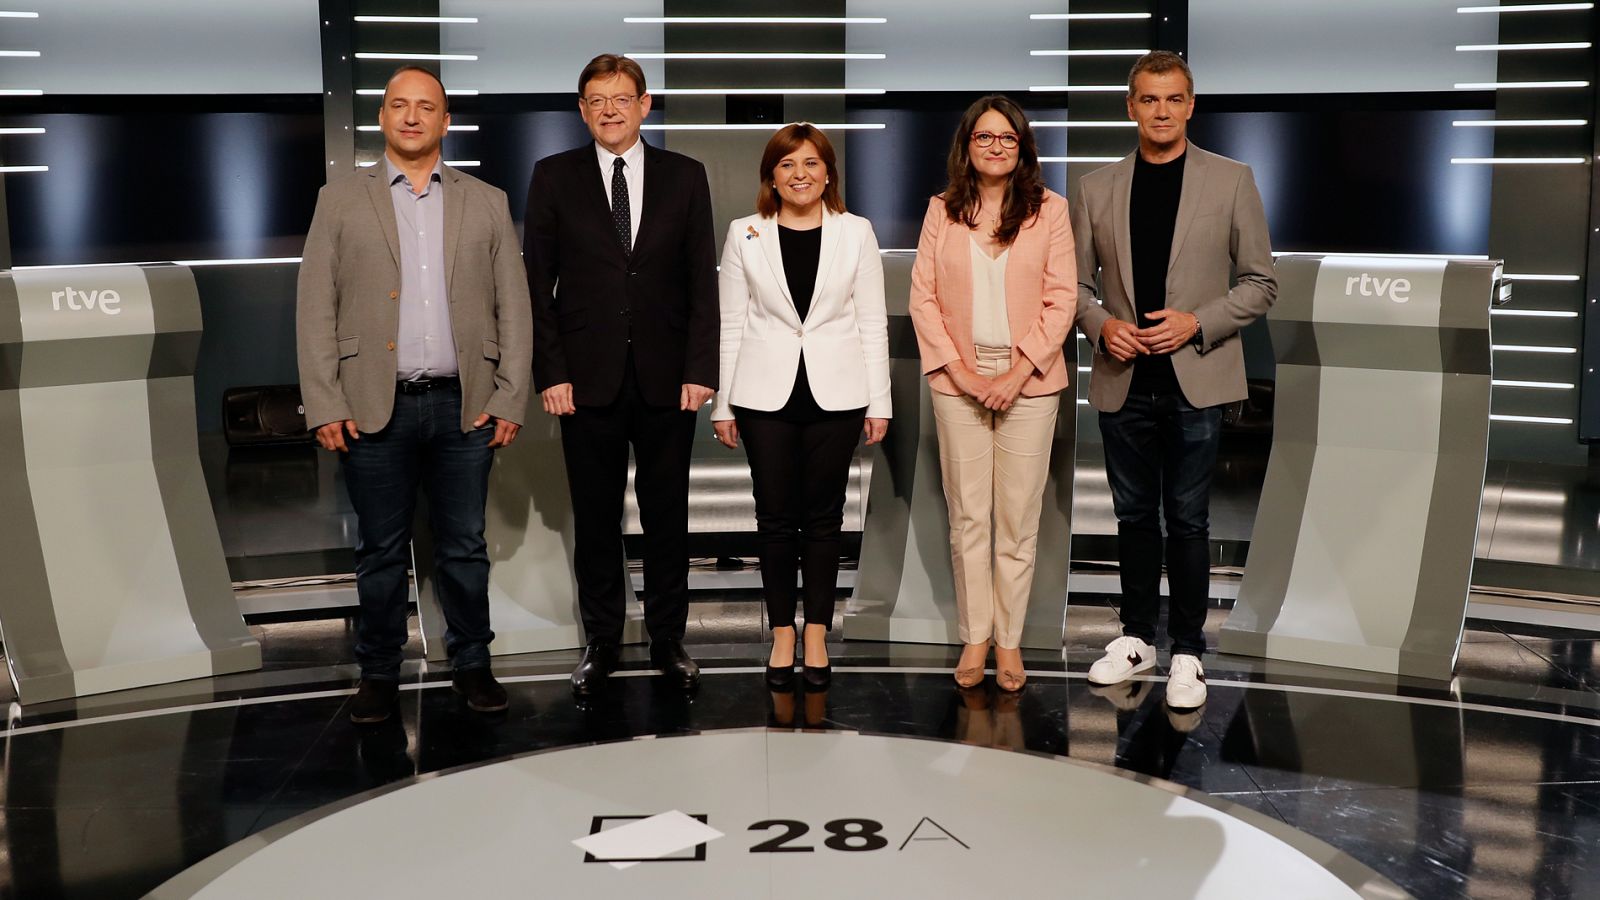 Debate elecciones valencianas RTVE: El debate de las elecciones valencianas refuerza los pactos electorales - RTVE.es